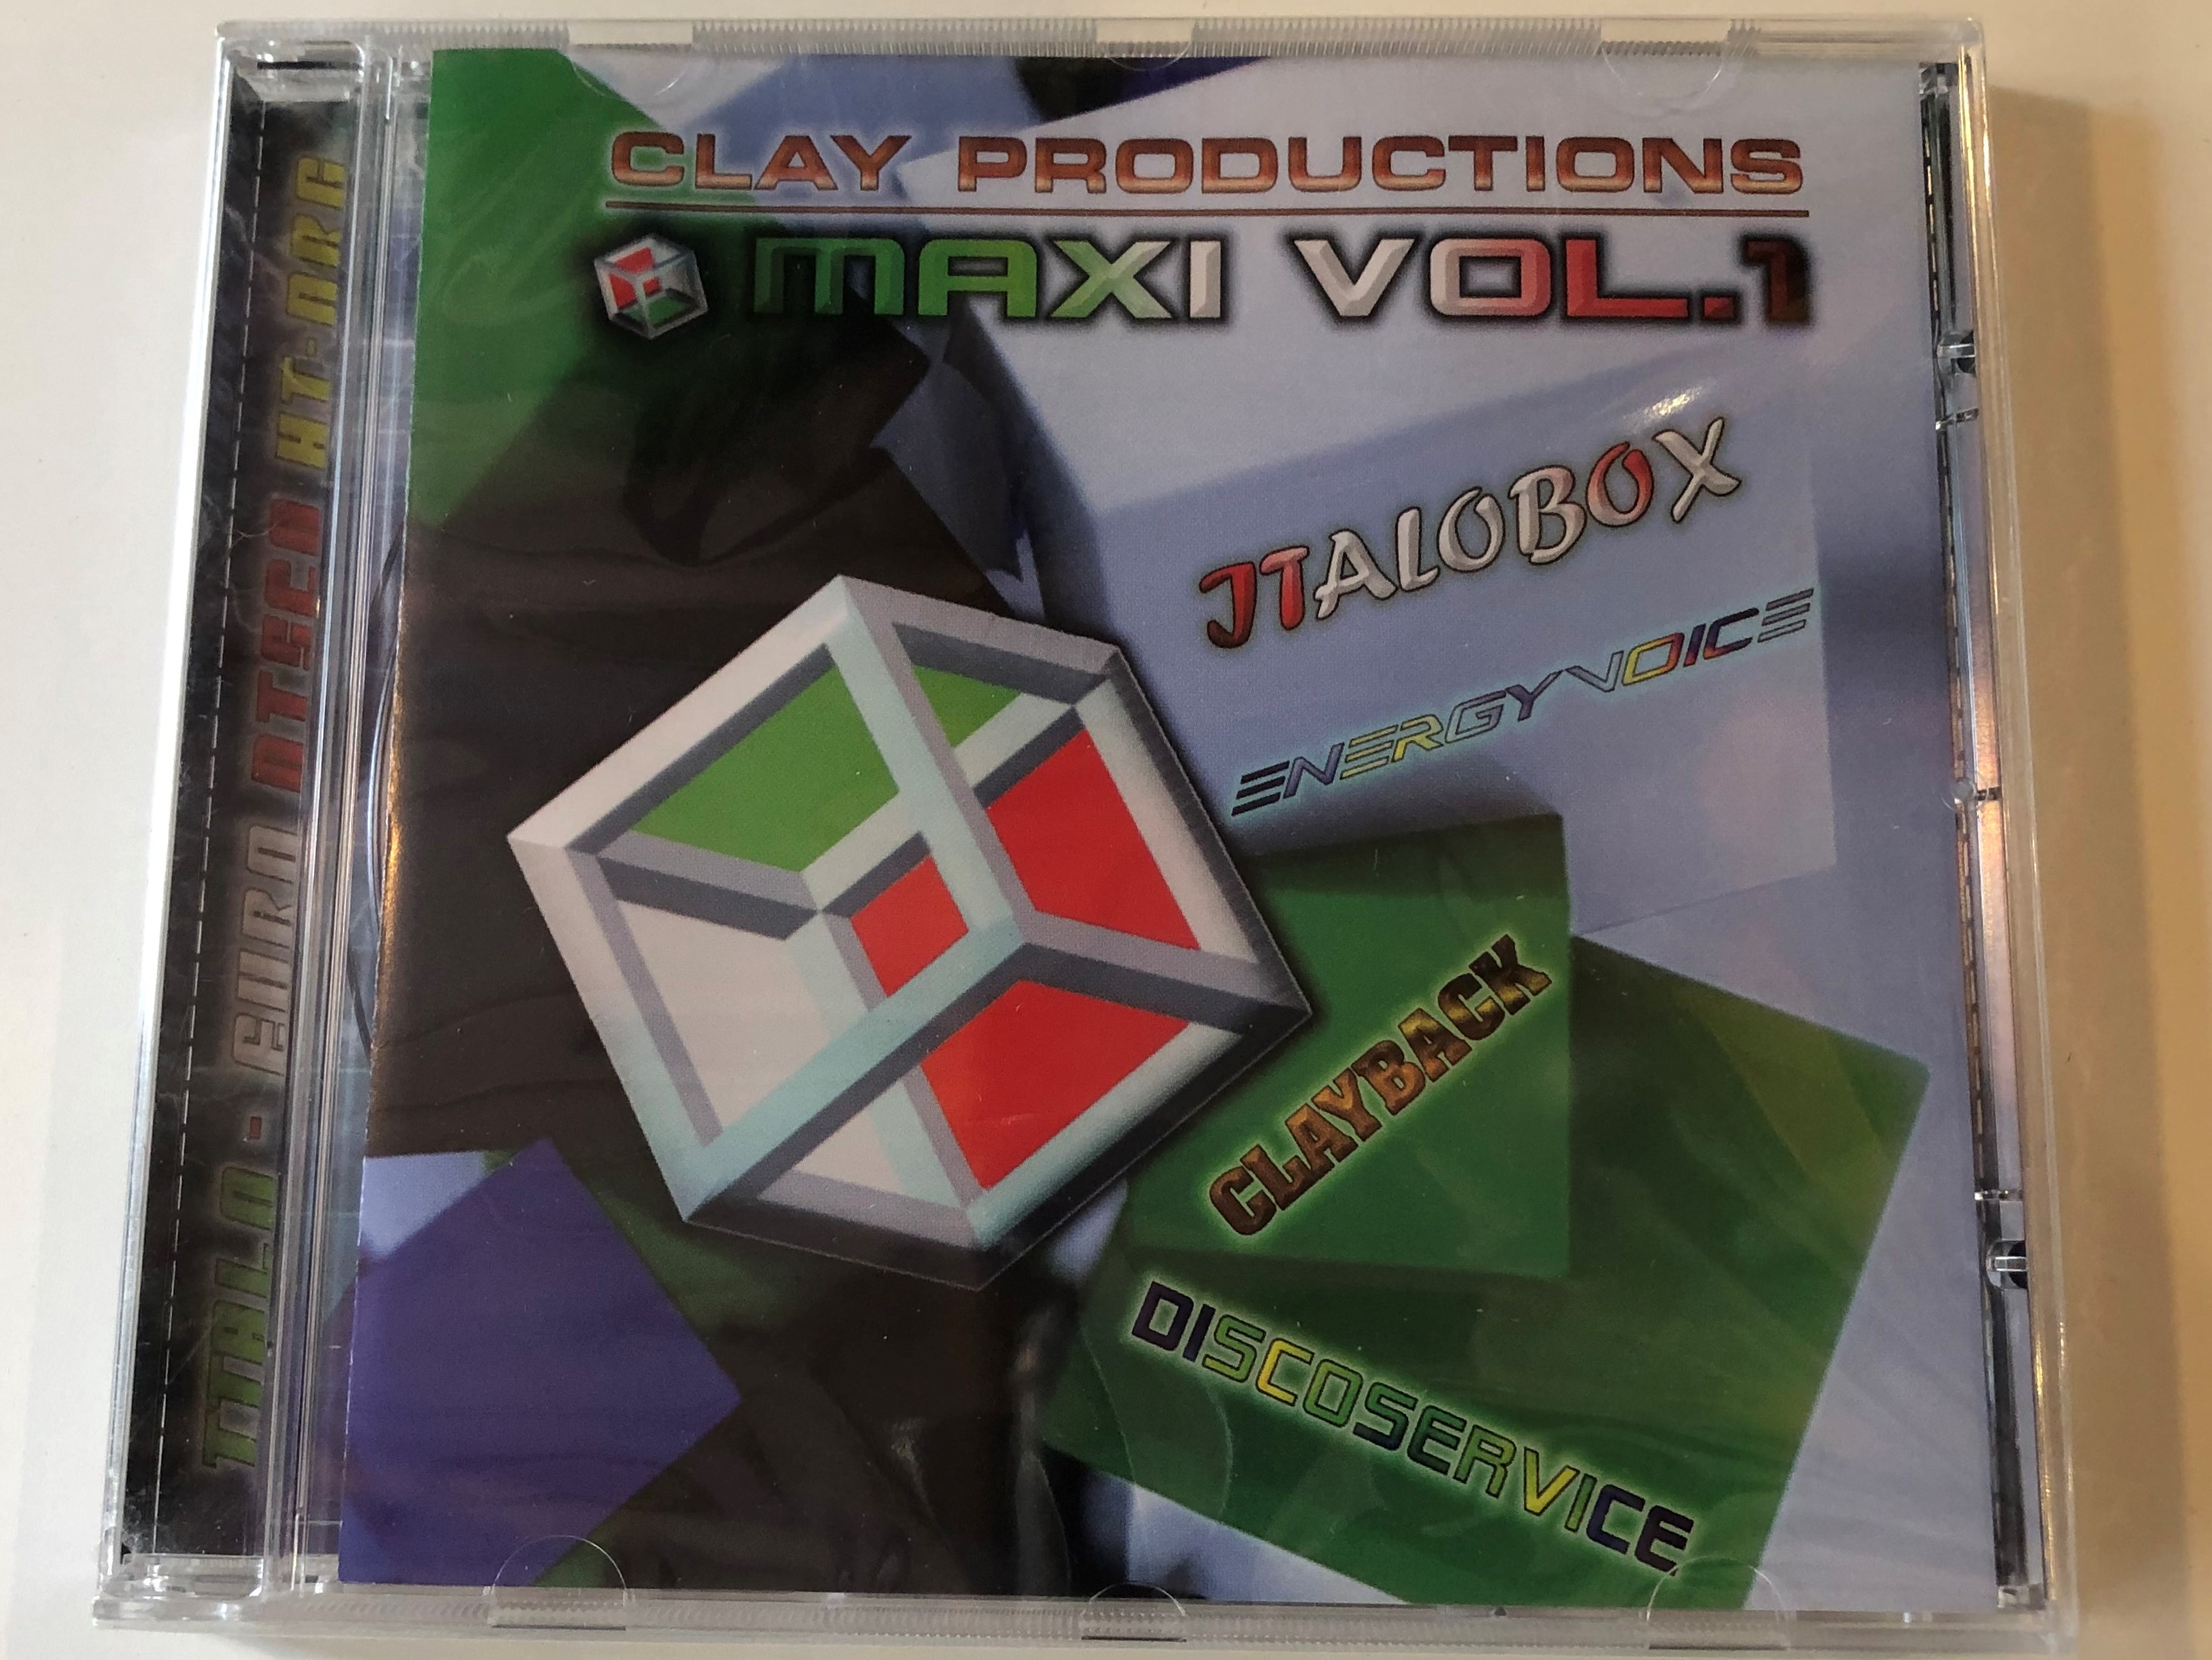 clay-productions-maxi-vol.-1-italobox-energy-voice-clayback-discoservice-retro-media-kft-audio-cd-2014-rmcd900-1-.jpg